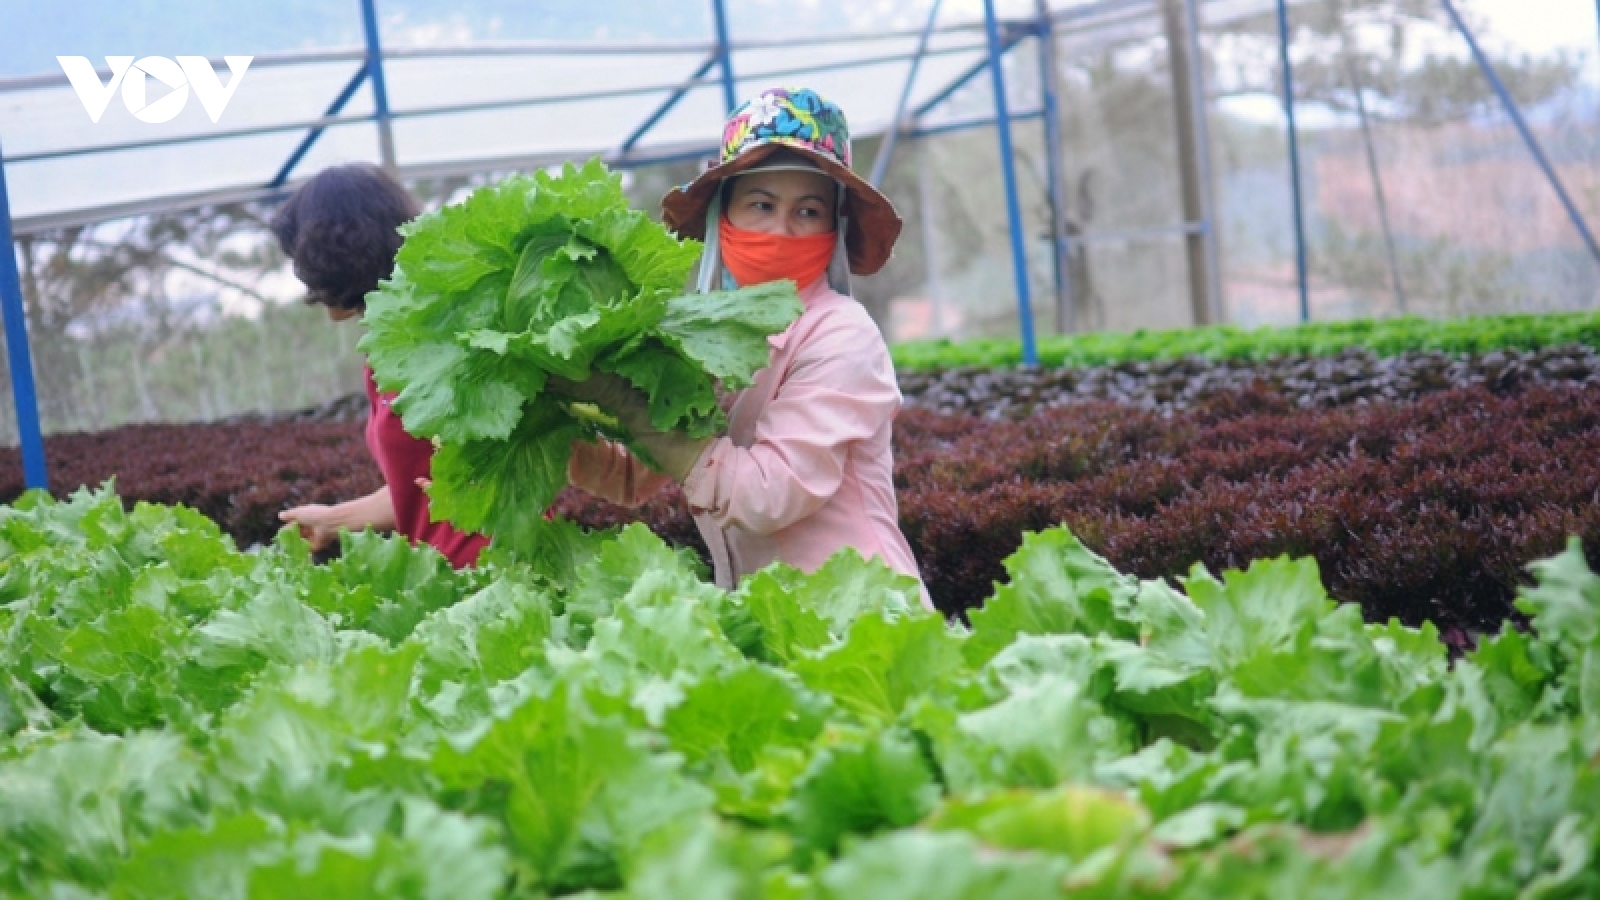 Nông dân Lâm Đồng khôi phục sản xuất rau, củ, quả trong điều kiện bình thường mới